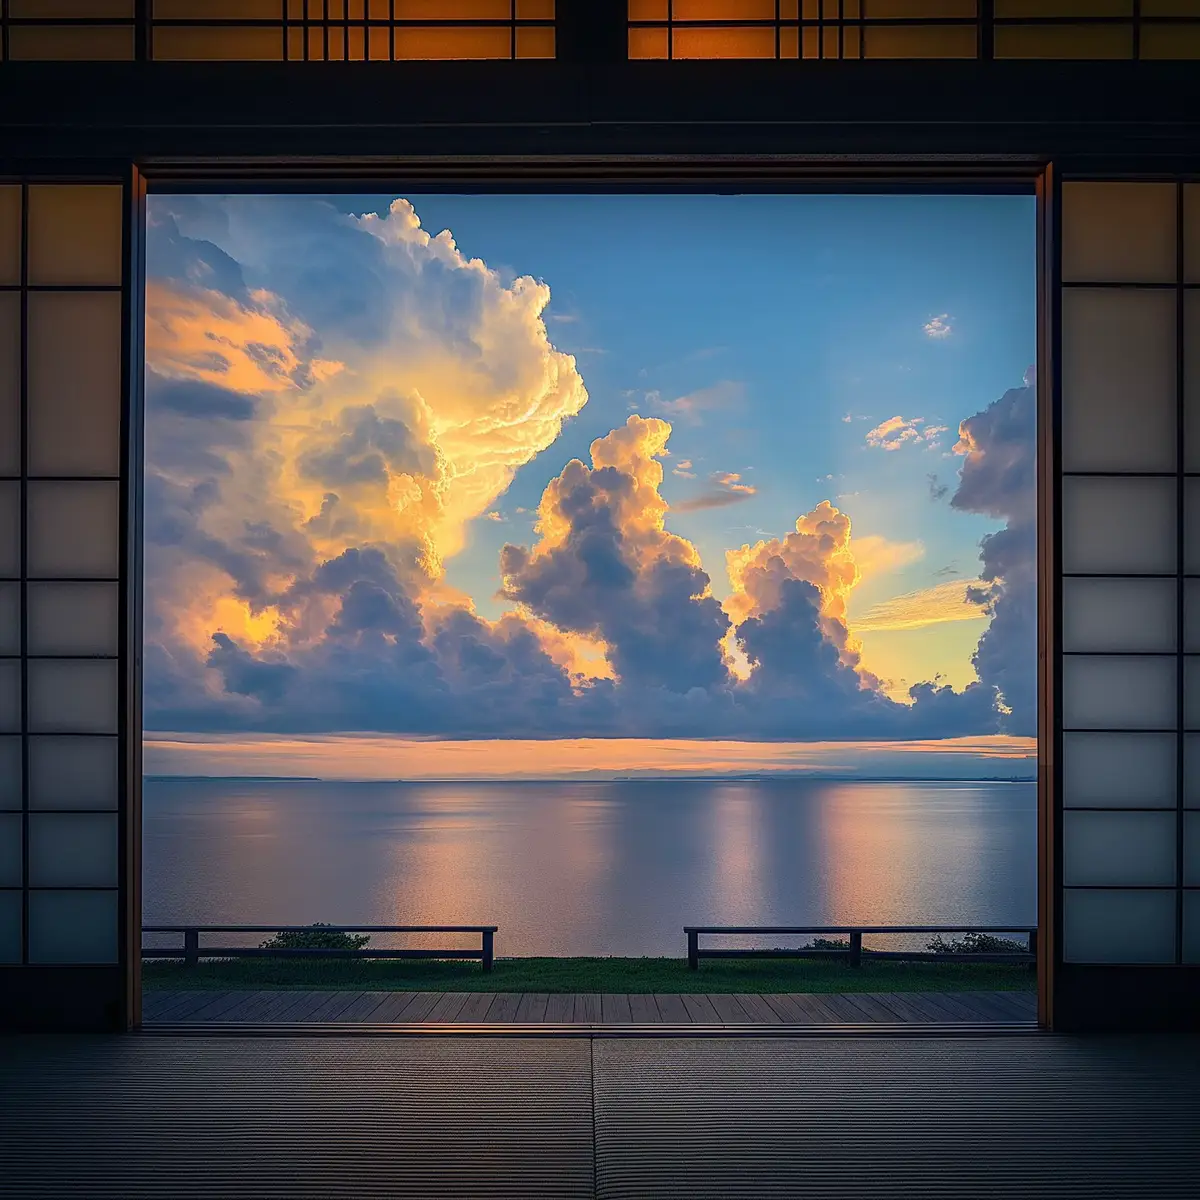 寝転がりながら夕焼けを眺める #日本の風景 #田舎 #夕方 #海 #夏 #エモい #japan #aesthetic #aiairt 